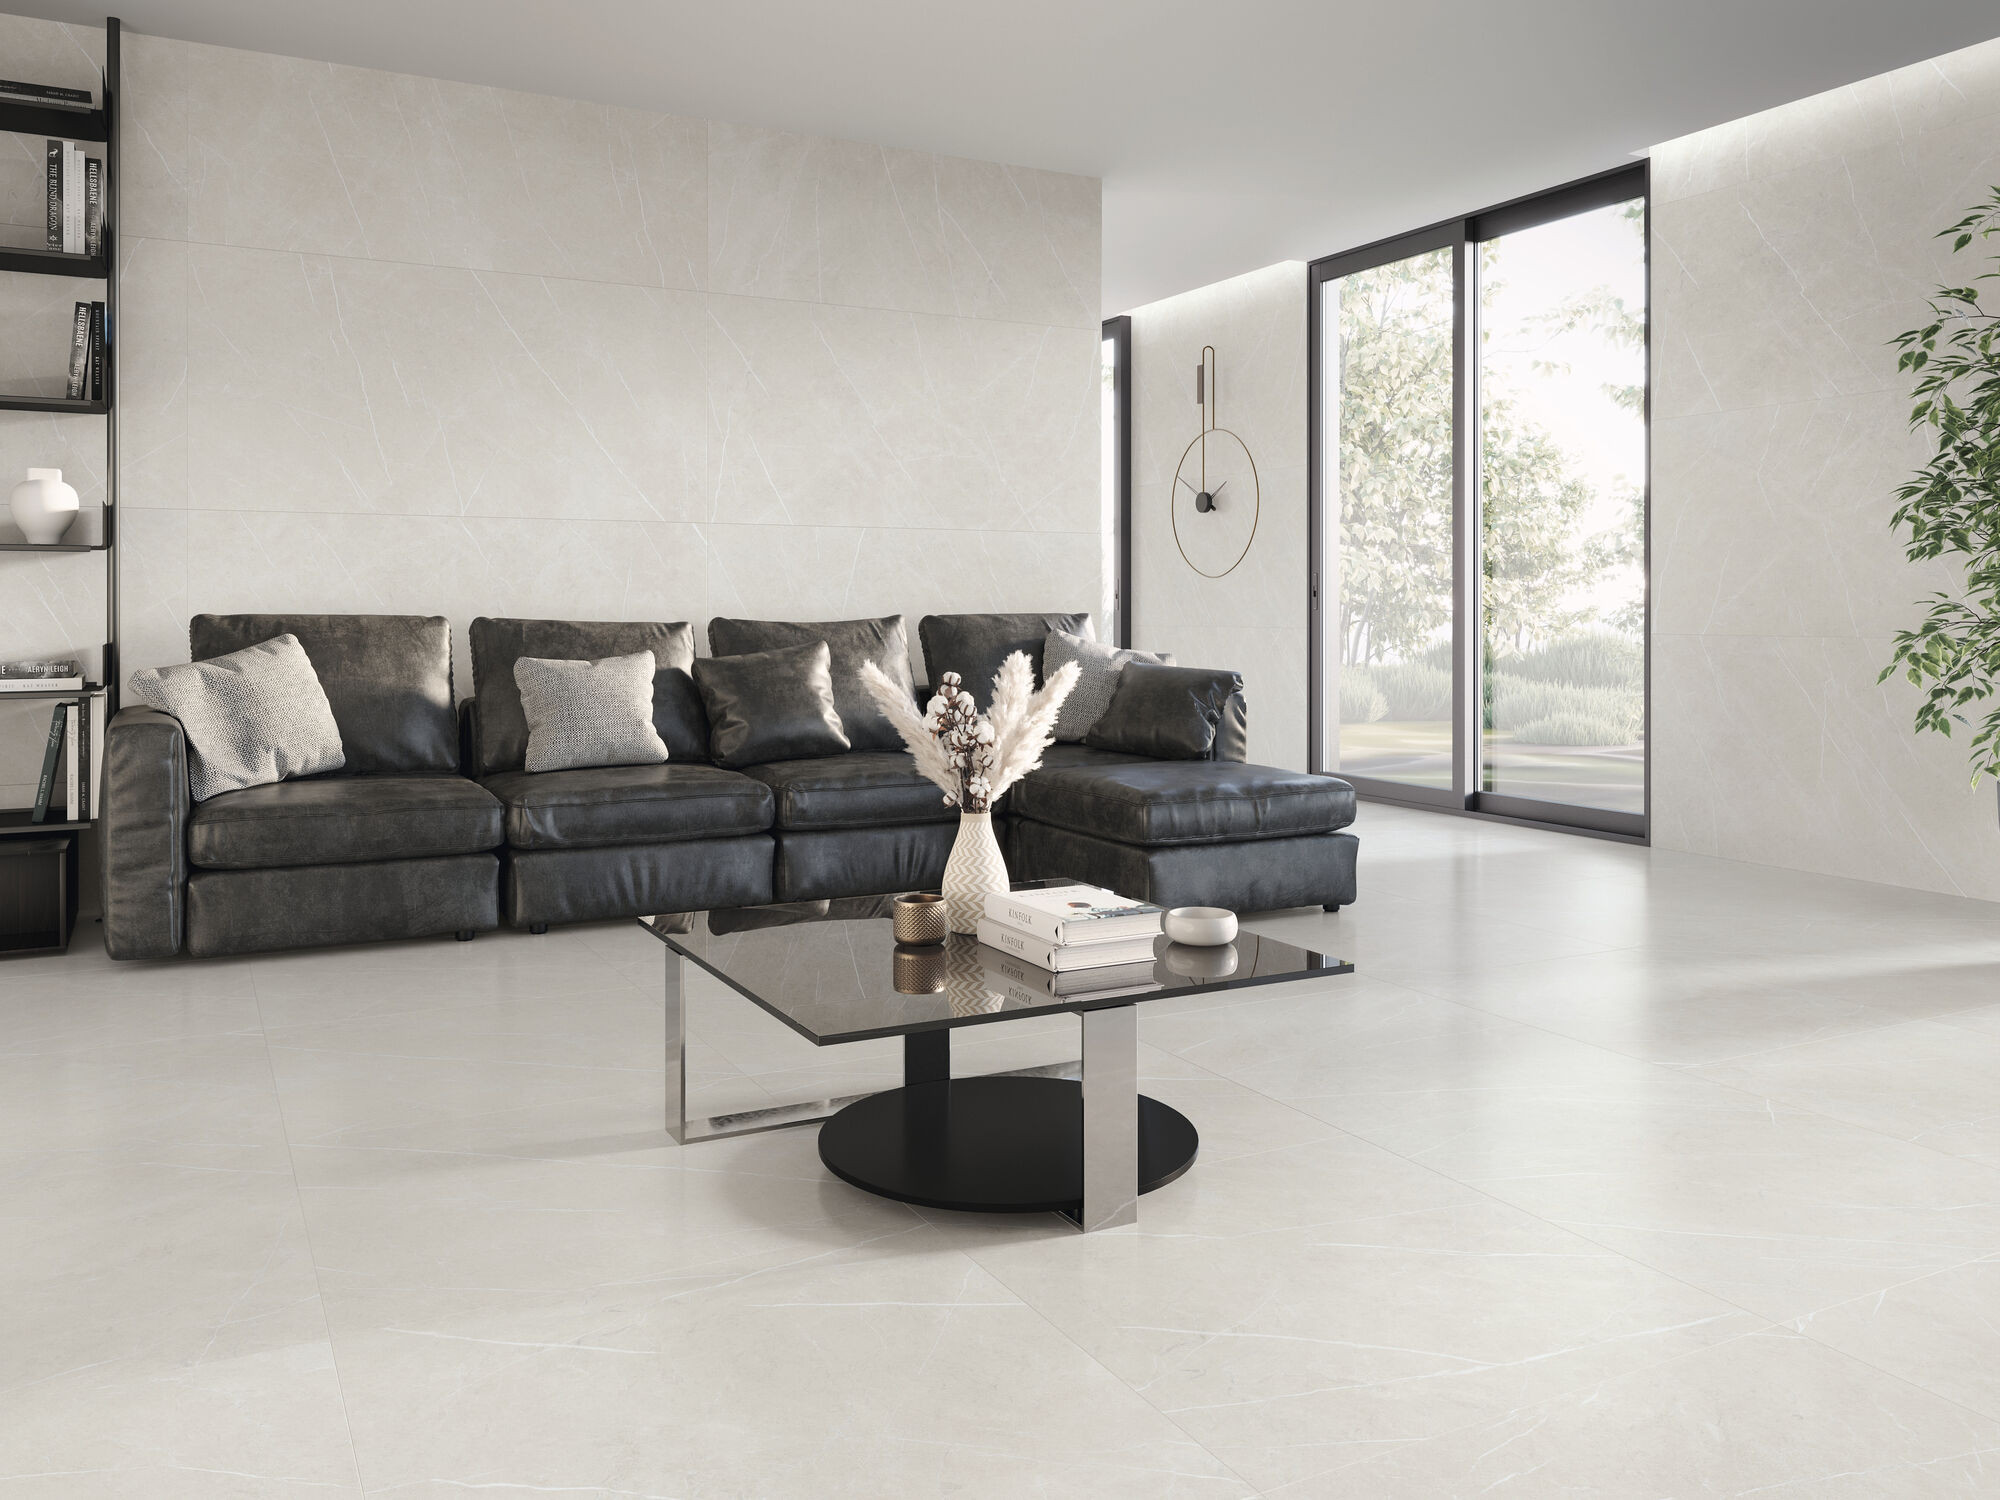 Lot de 8.64 m² - Carrelage imitation marbre ETERNEL PEARL 60X60 - 8.64m² - 3